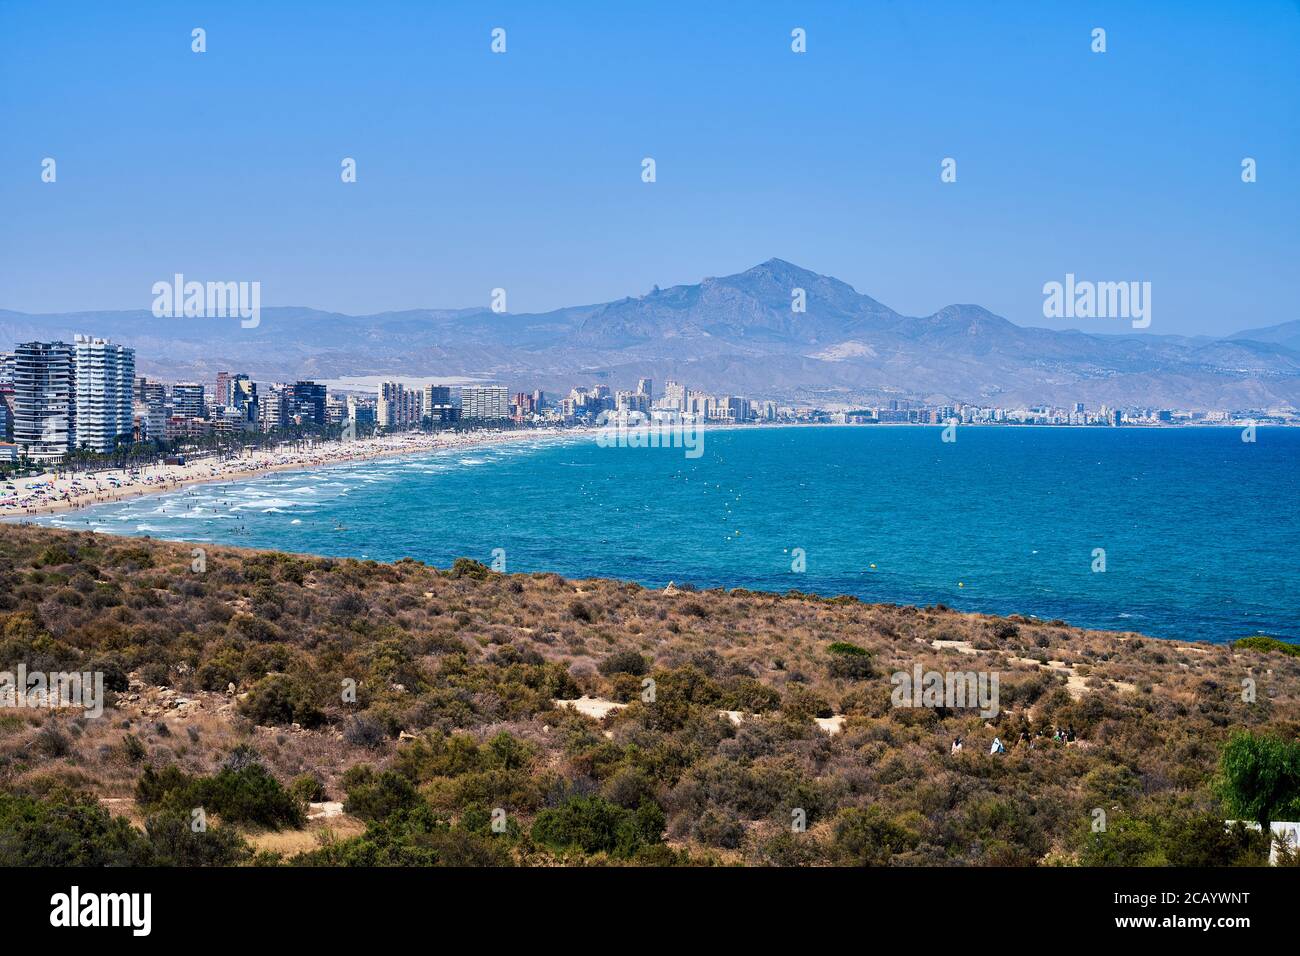 La vista desde el cabo a través de la Playa de San Juan con las montañas detrás, Alicante, España, Europa, julio de 2020 Foto de stock